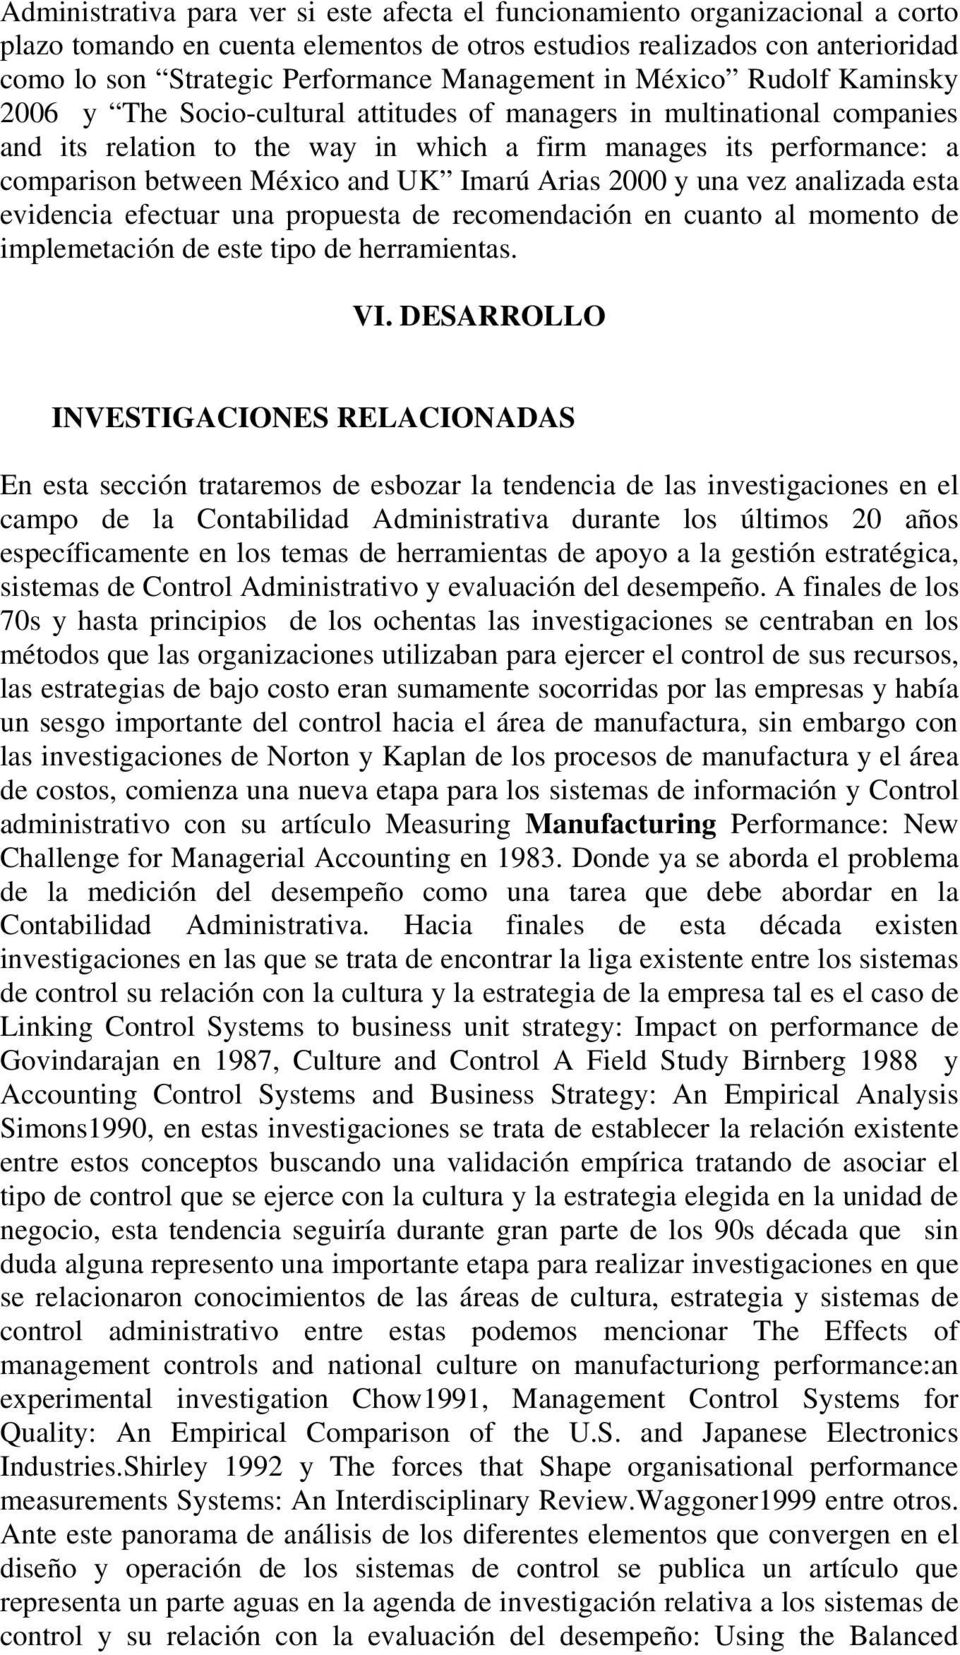 between México and UK Imarú Arias 2000 y una vez analizada esta evidencia efectuar una propuesta de recomendación en cuanto al momento de implemetación de este tipo de herramientas. VI.